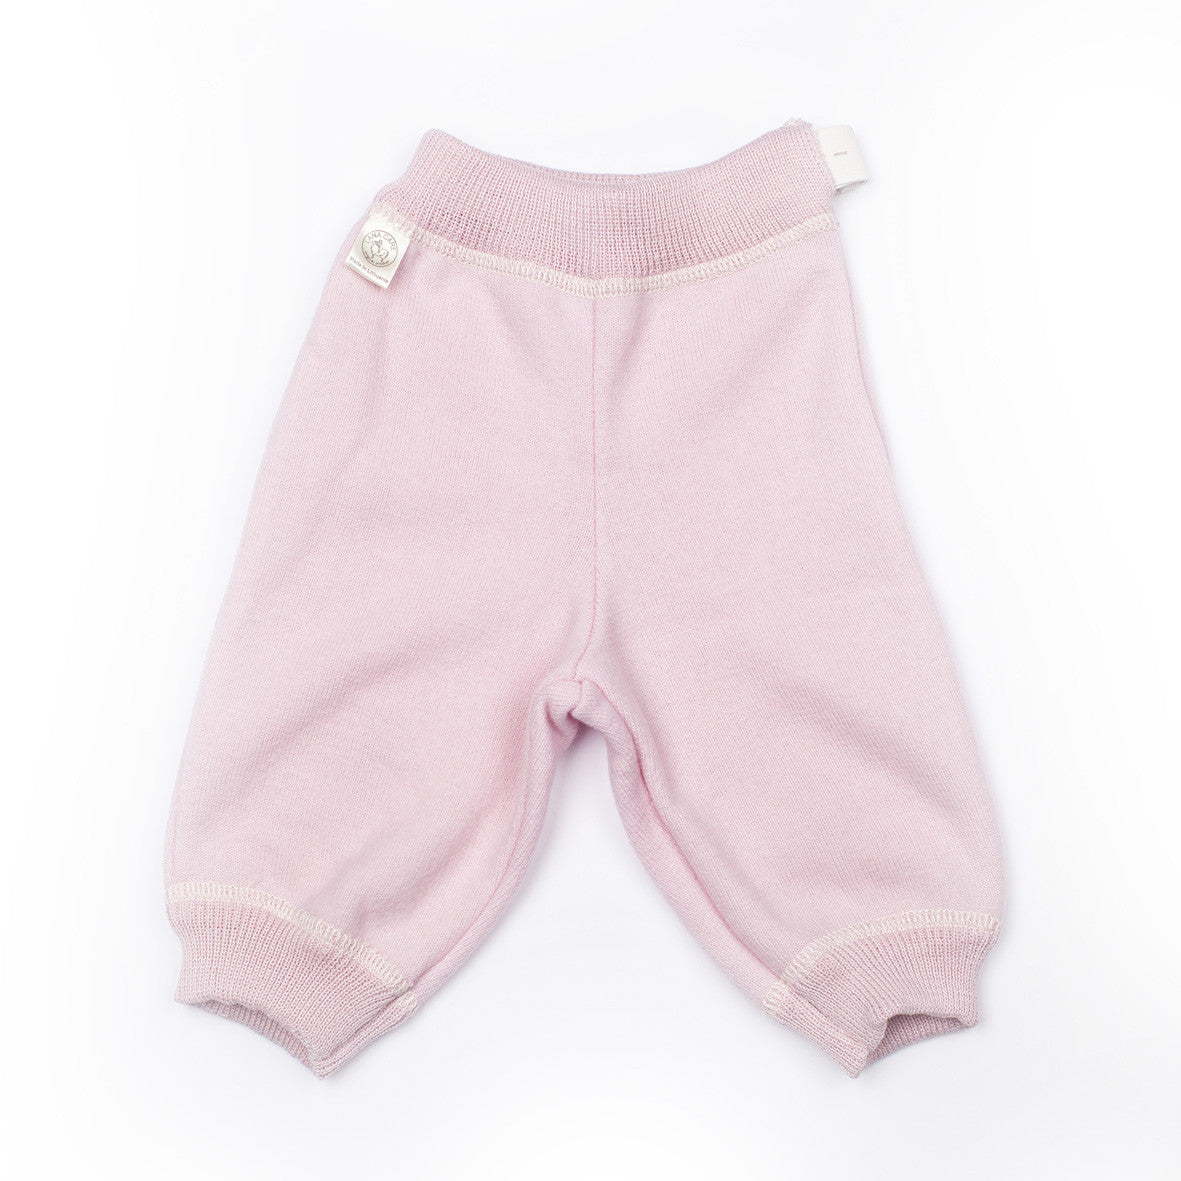 LANACare Baby/Toddler Pants in Felted Organic Merino Wool - SOFT PINK